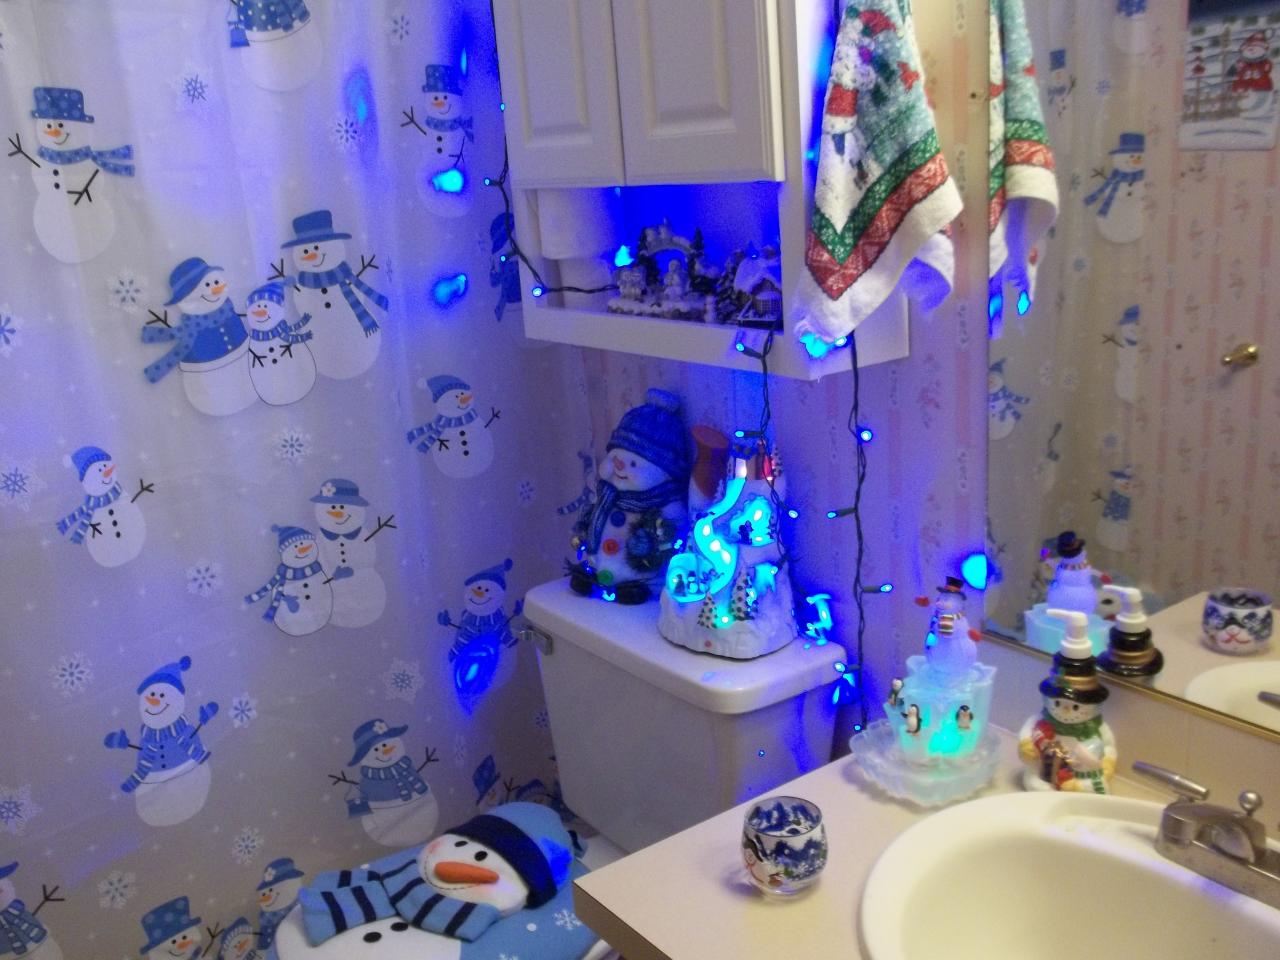 Cool snowman bath room Bathroom, Room, Bath